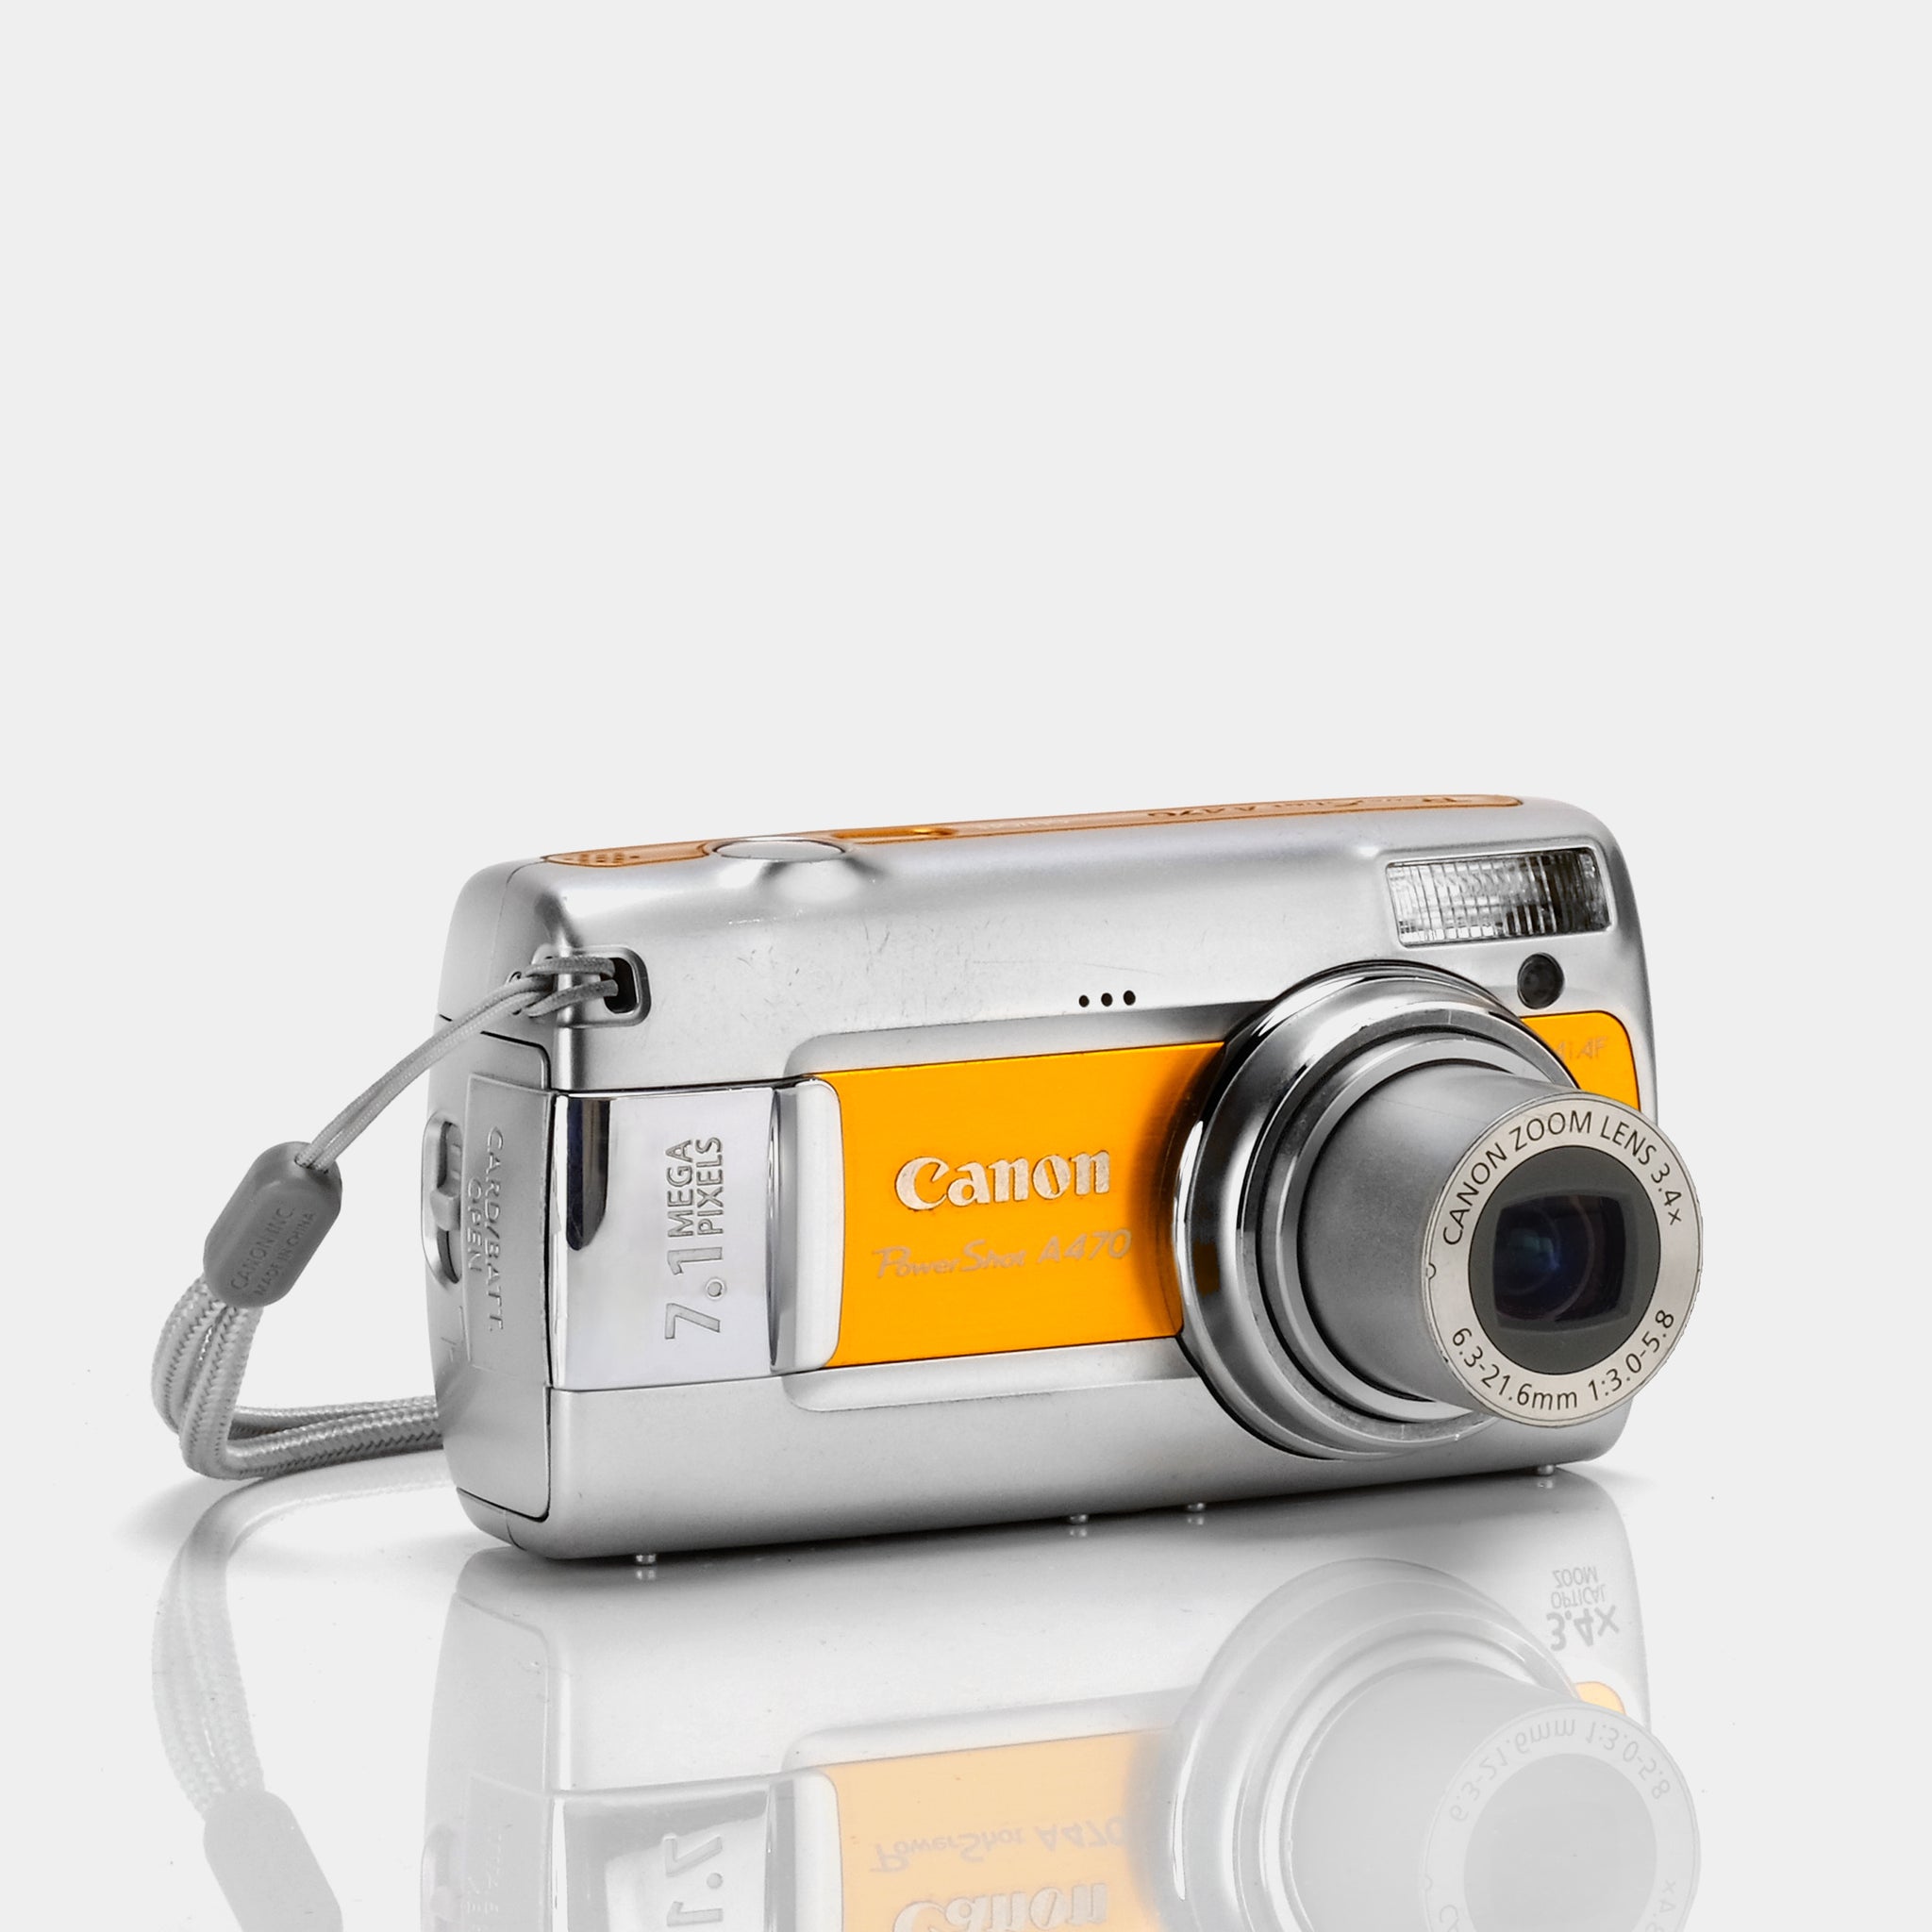 Canon Powershot A470 - Características y funciones